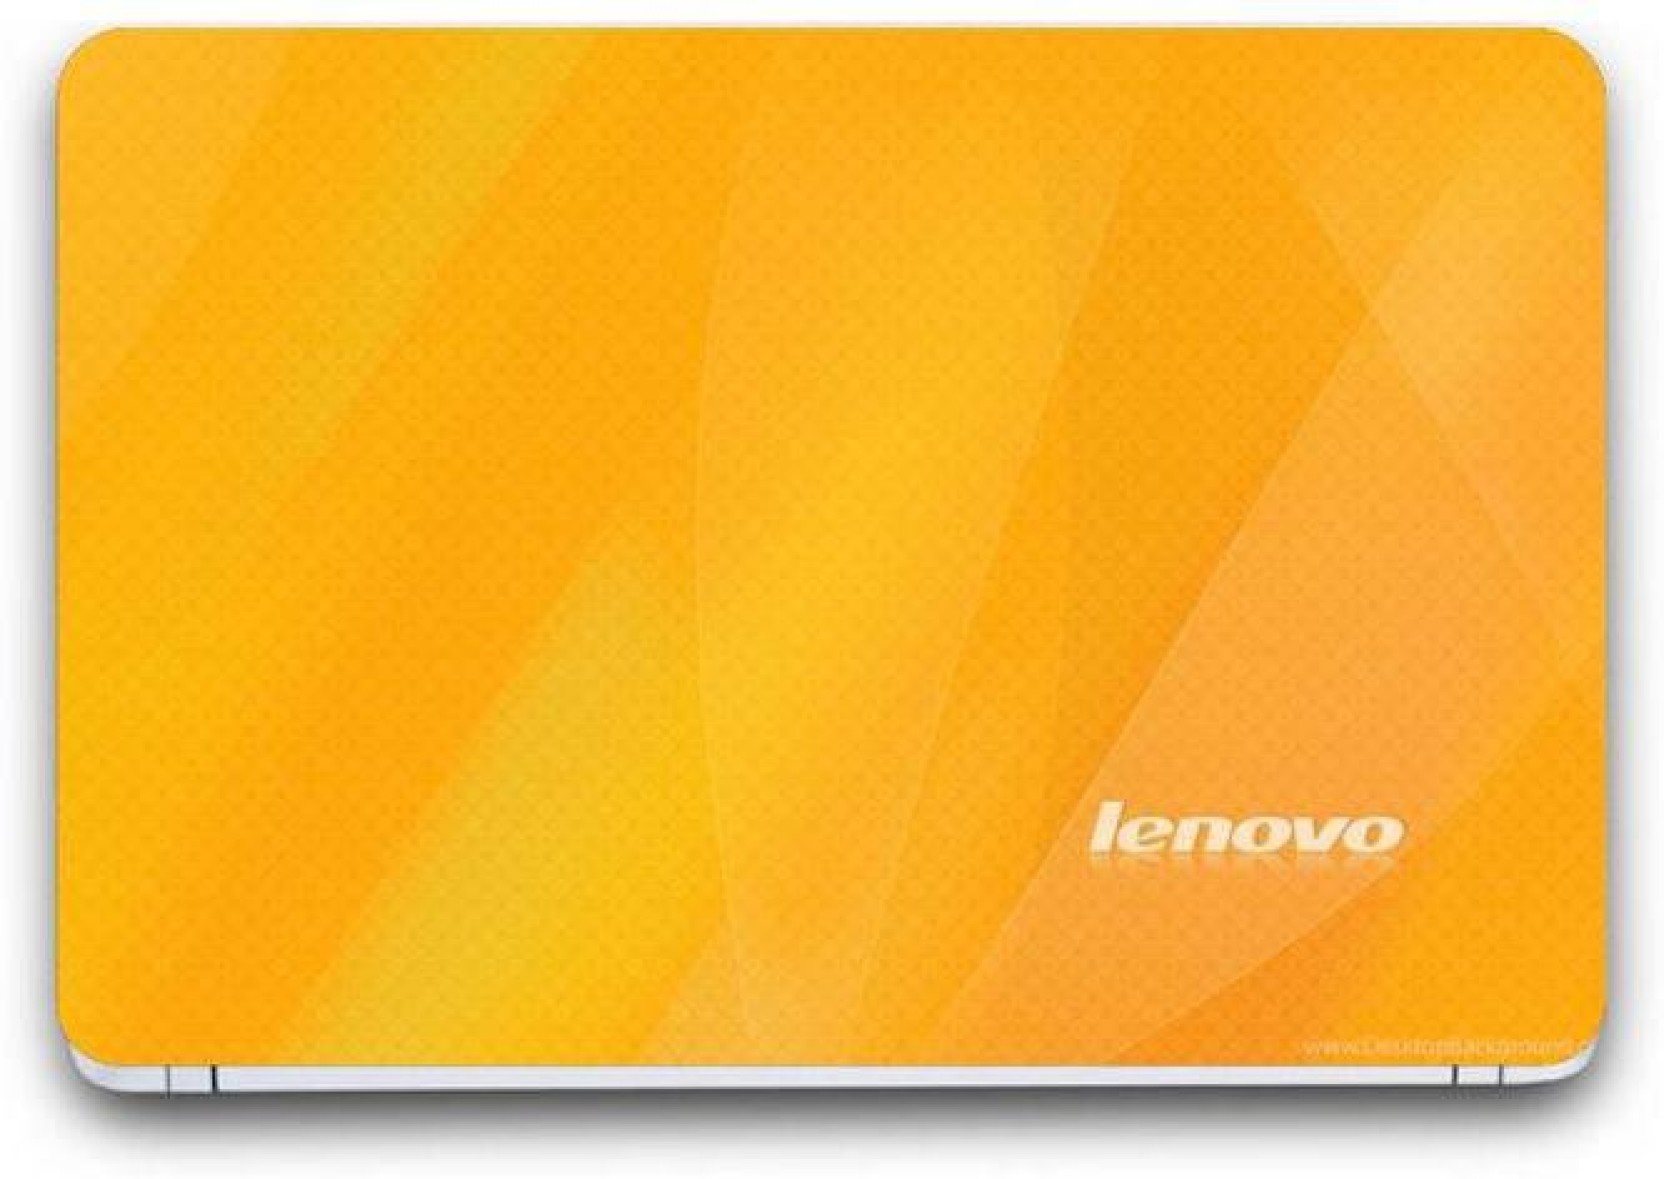 lenovo wallpaper,gelb,orange,technologie